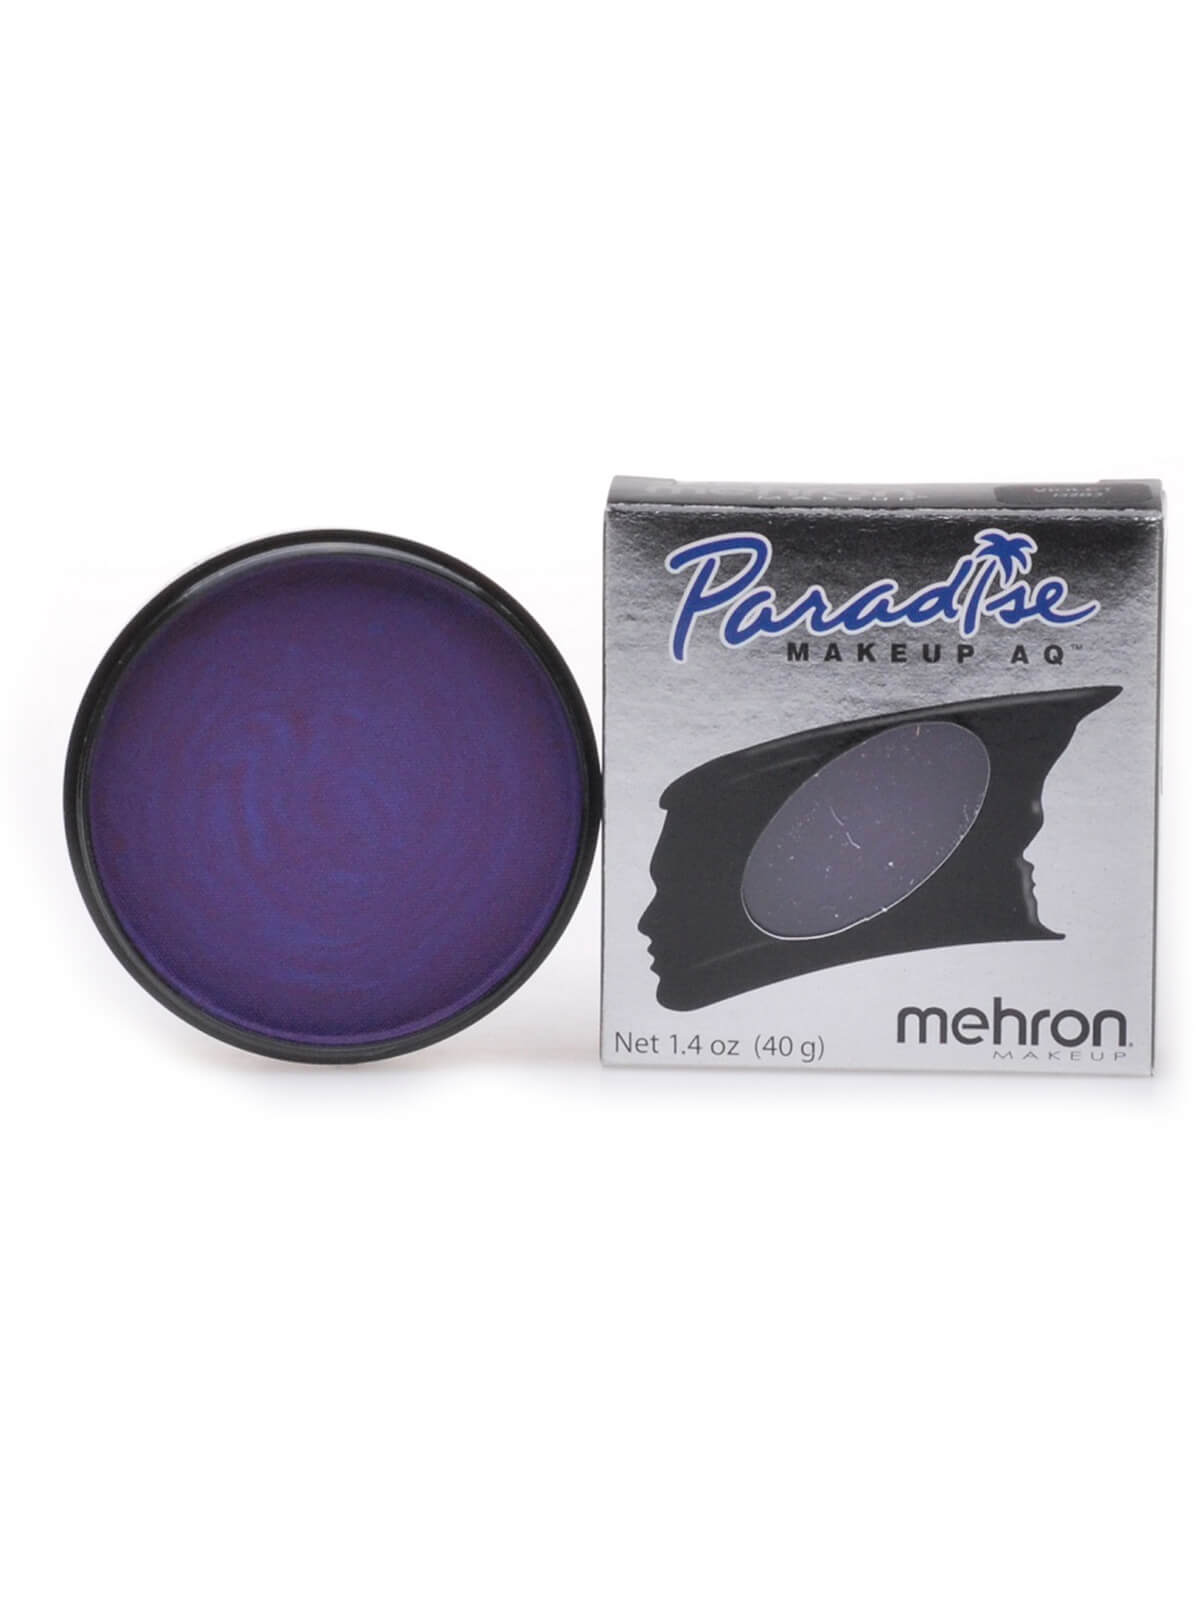 Mehron Paradise Makeup AQ - Pastel - Violet